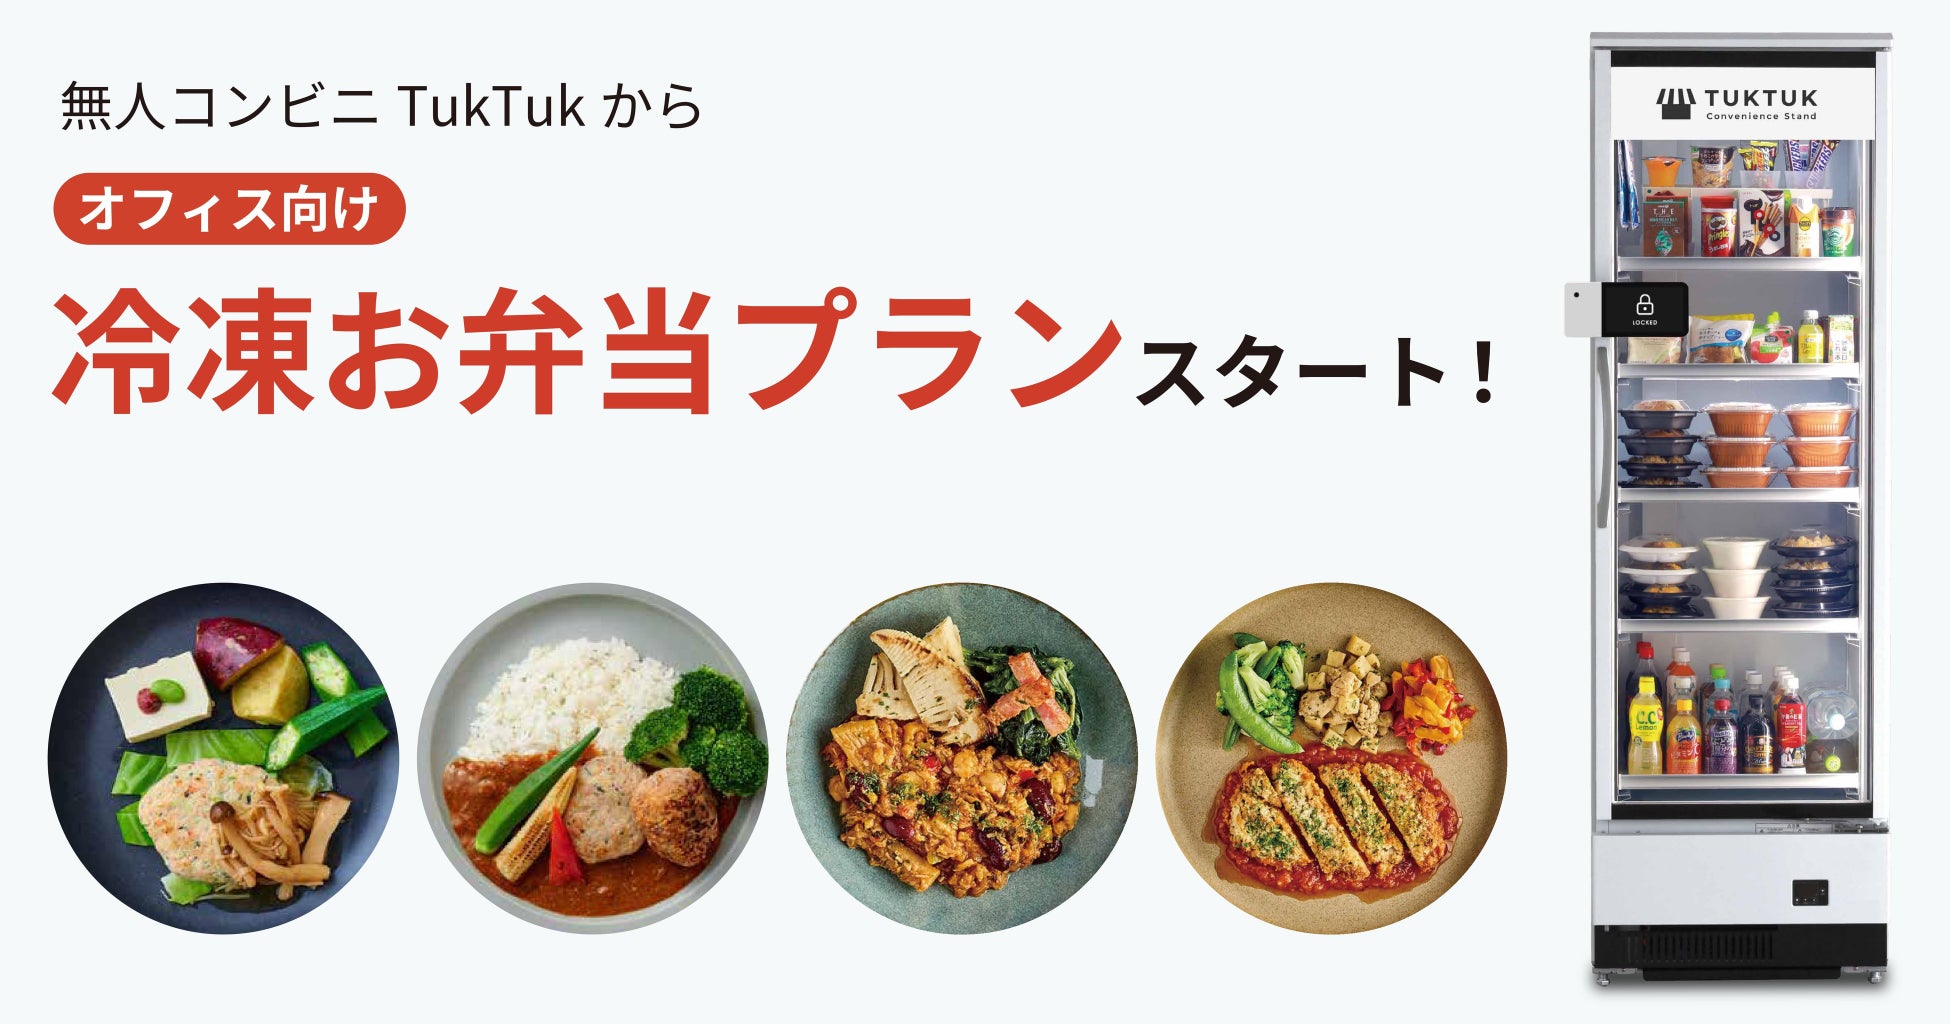 静岡エリアのおみやげもオンラインで！
東海キヨスクのオンラインショップ「Click! Kiosk」
10月3日から商品ラインナップ拡充